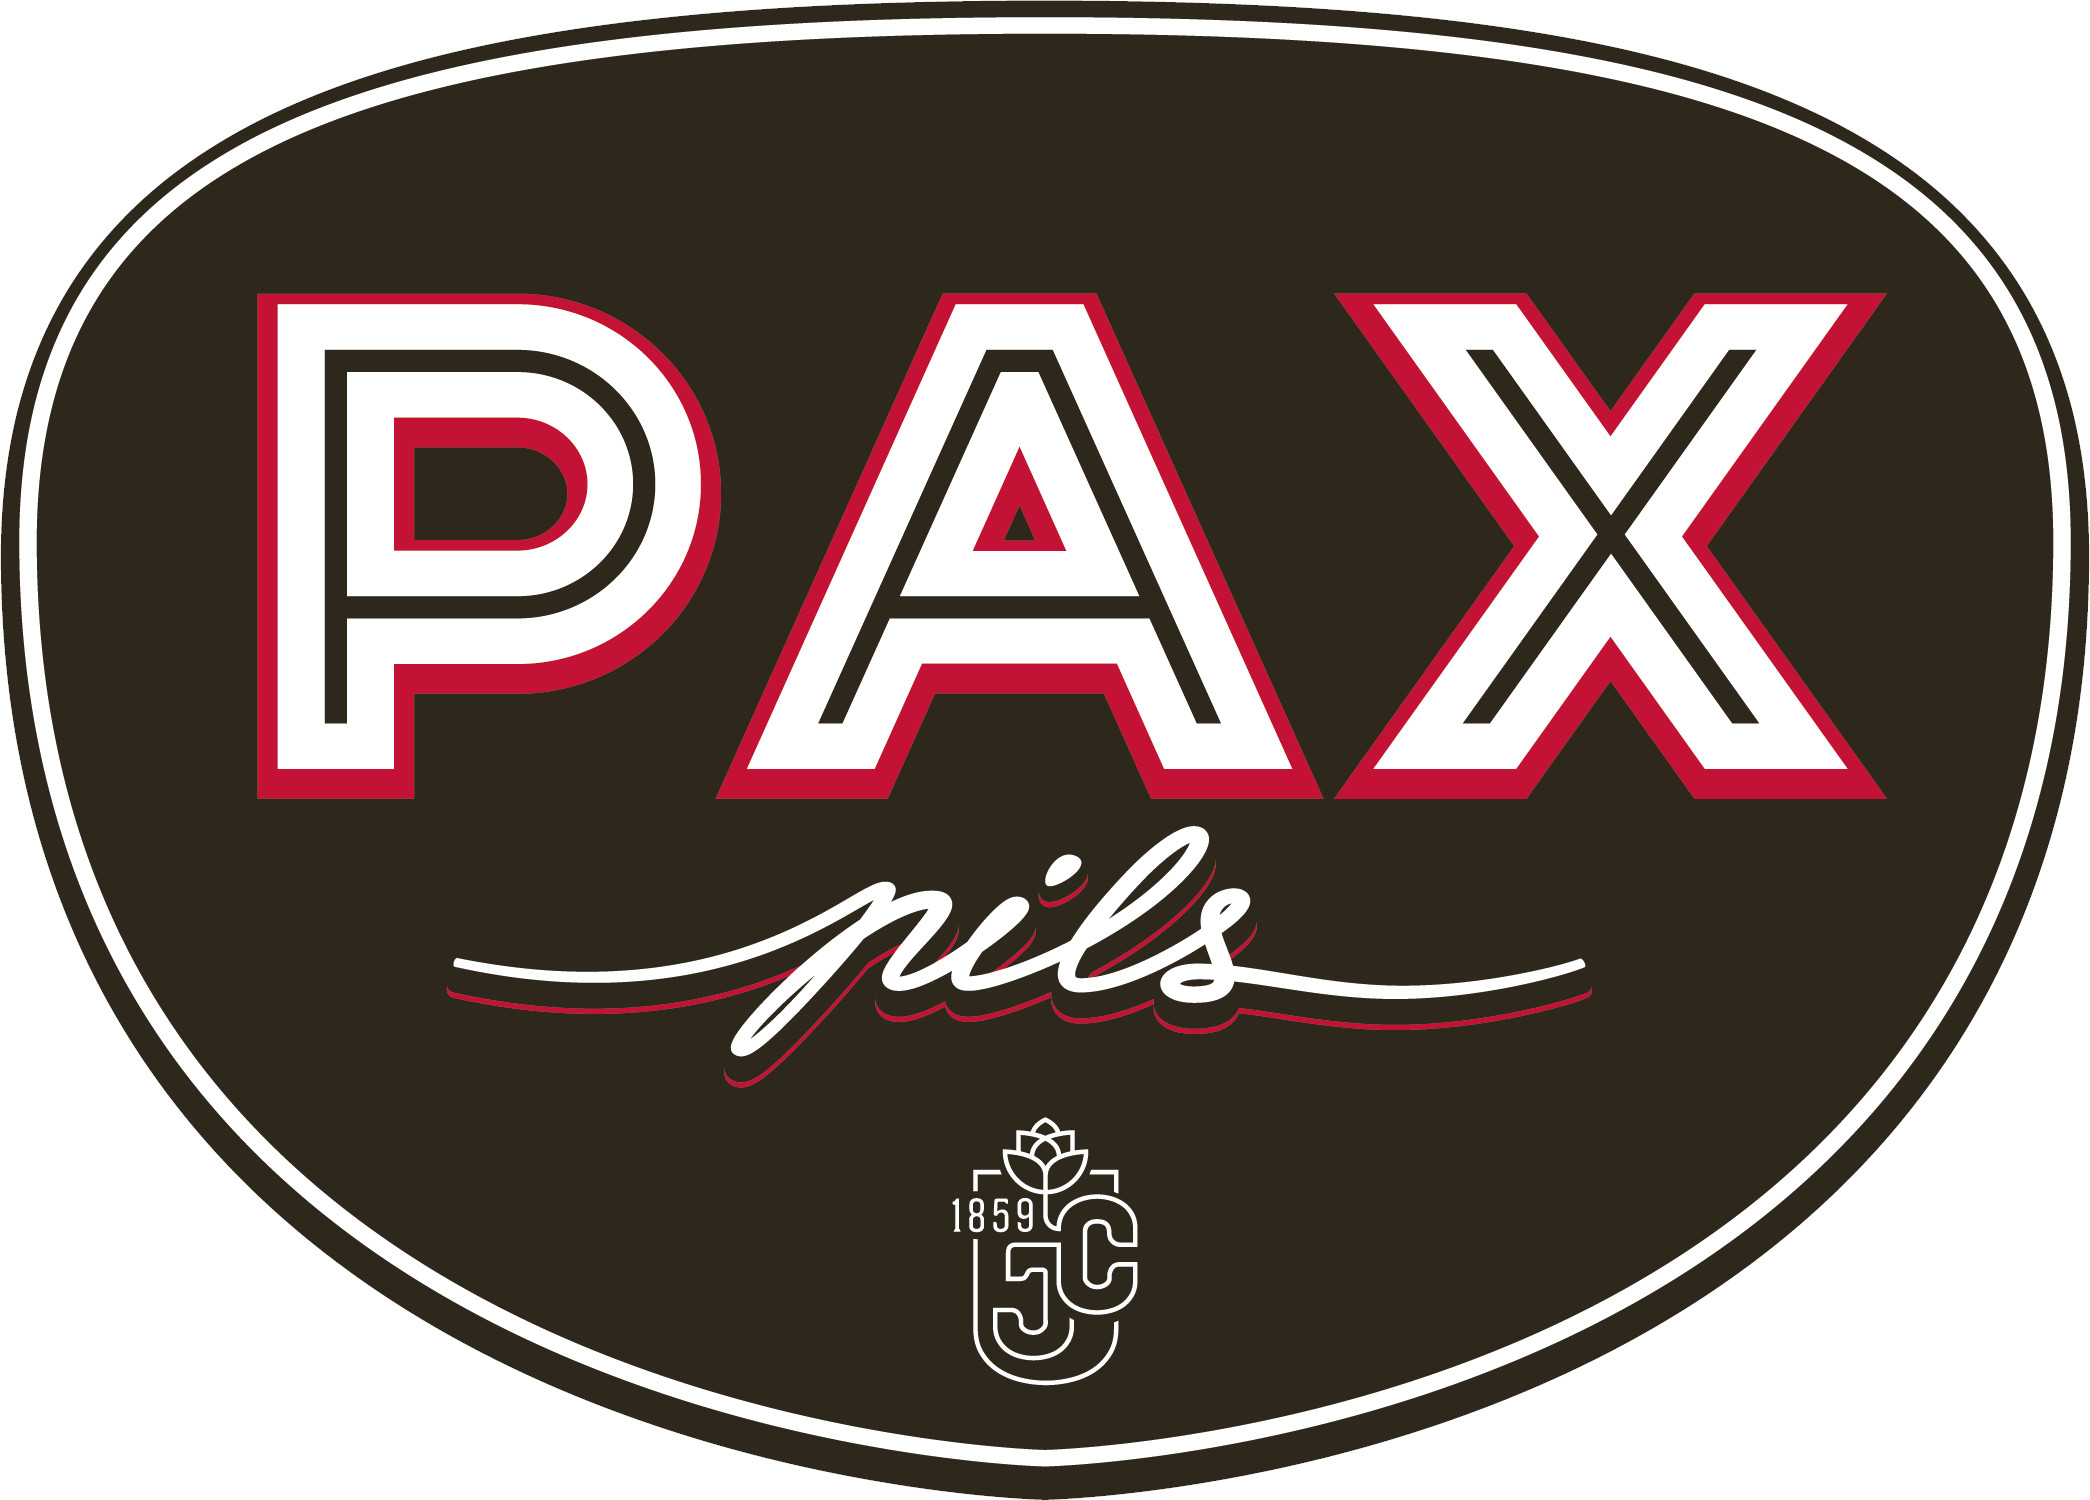 Pax Pils Fust 50 ltr 5%